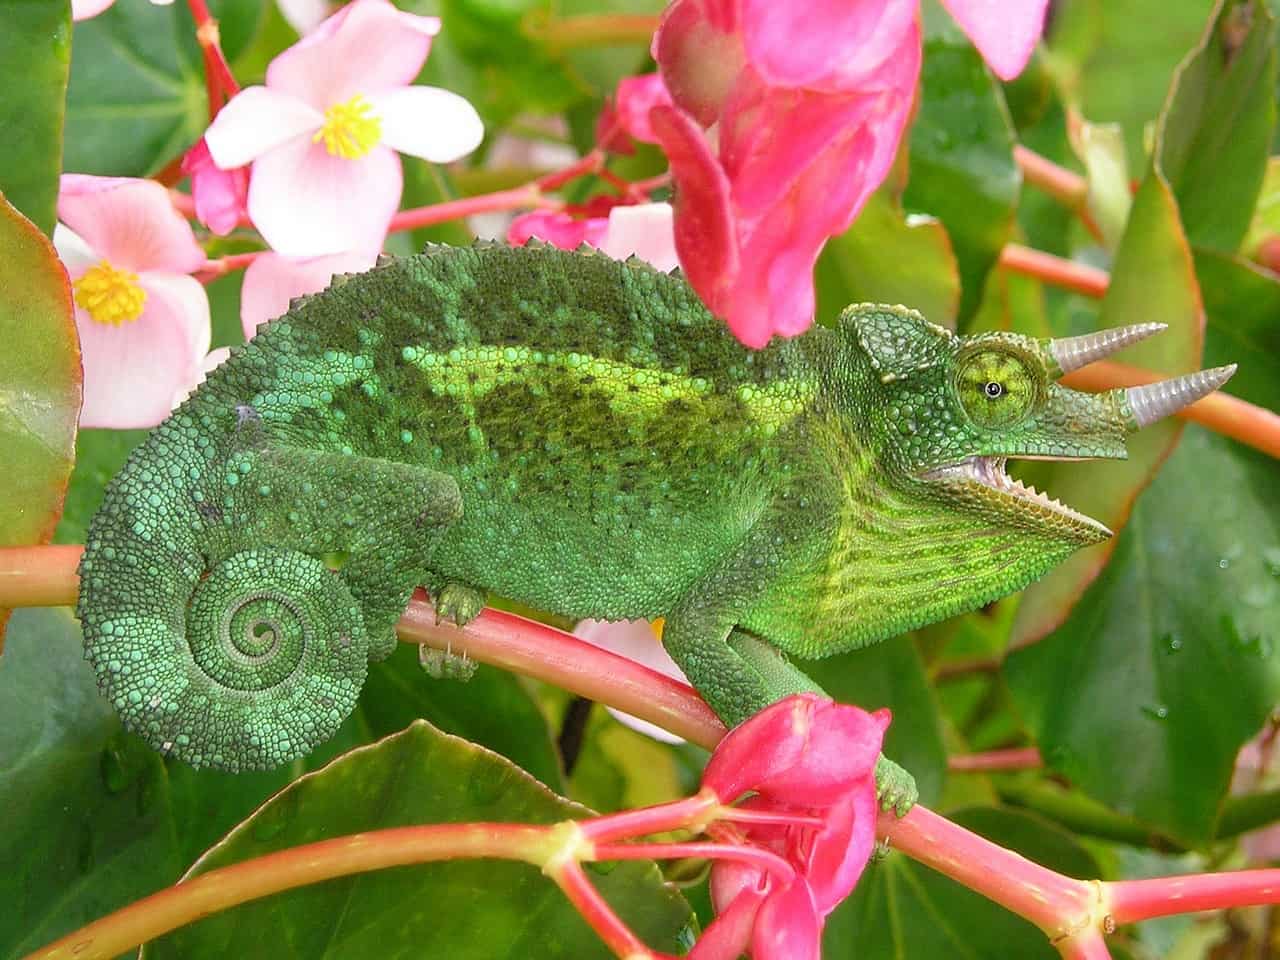 jackson's chameleon